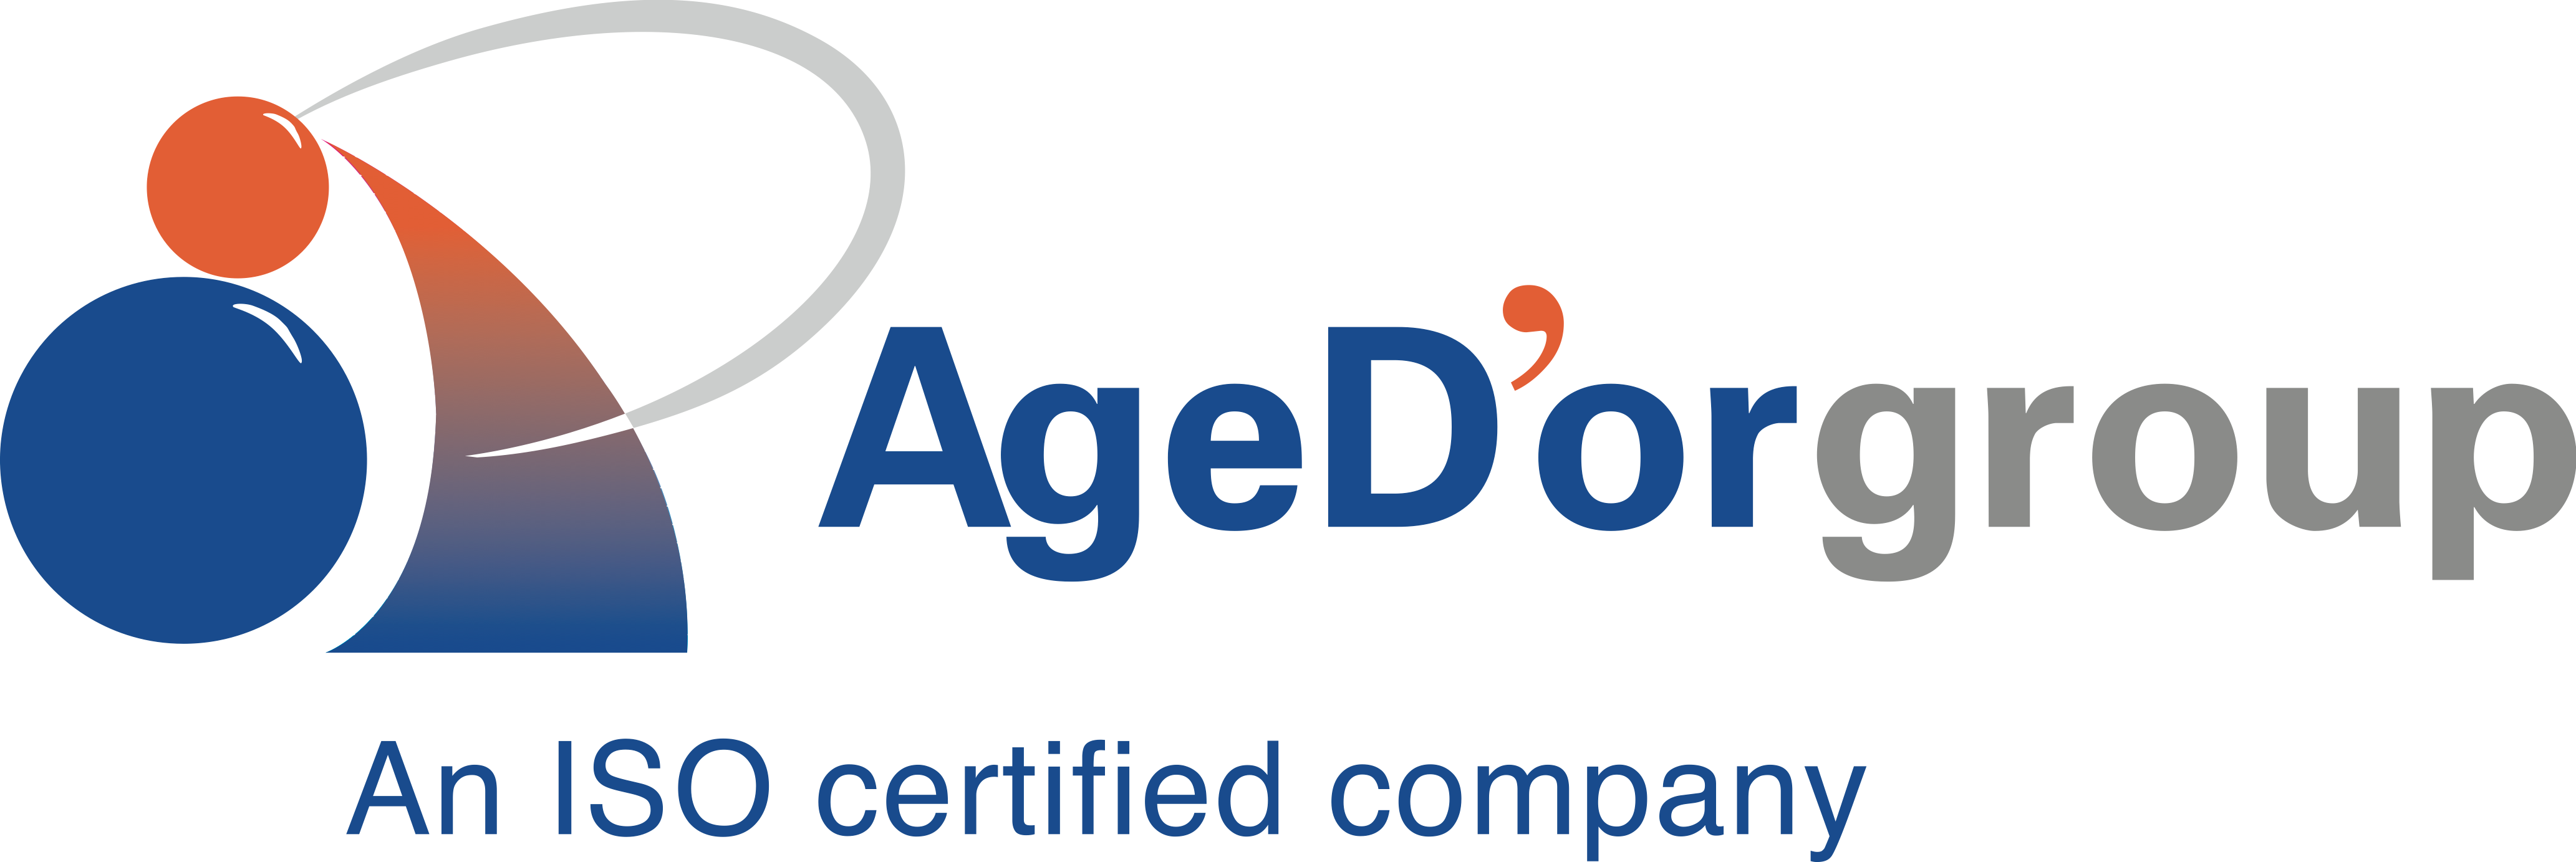 Age D’or Pte Ltd